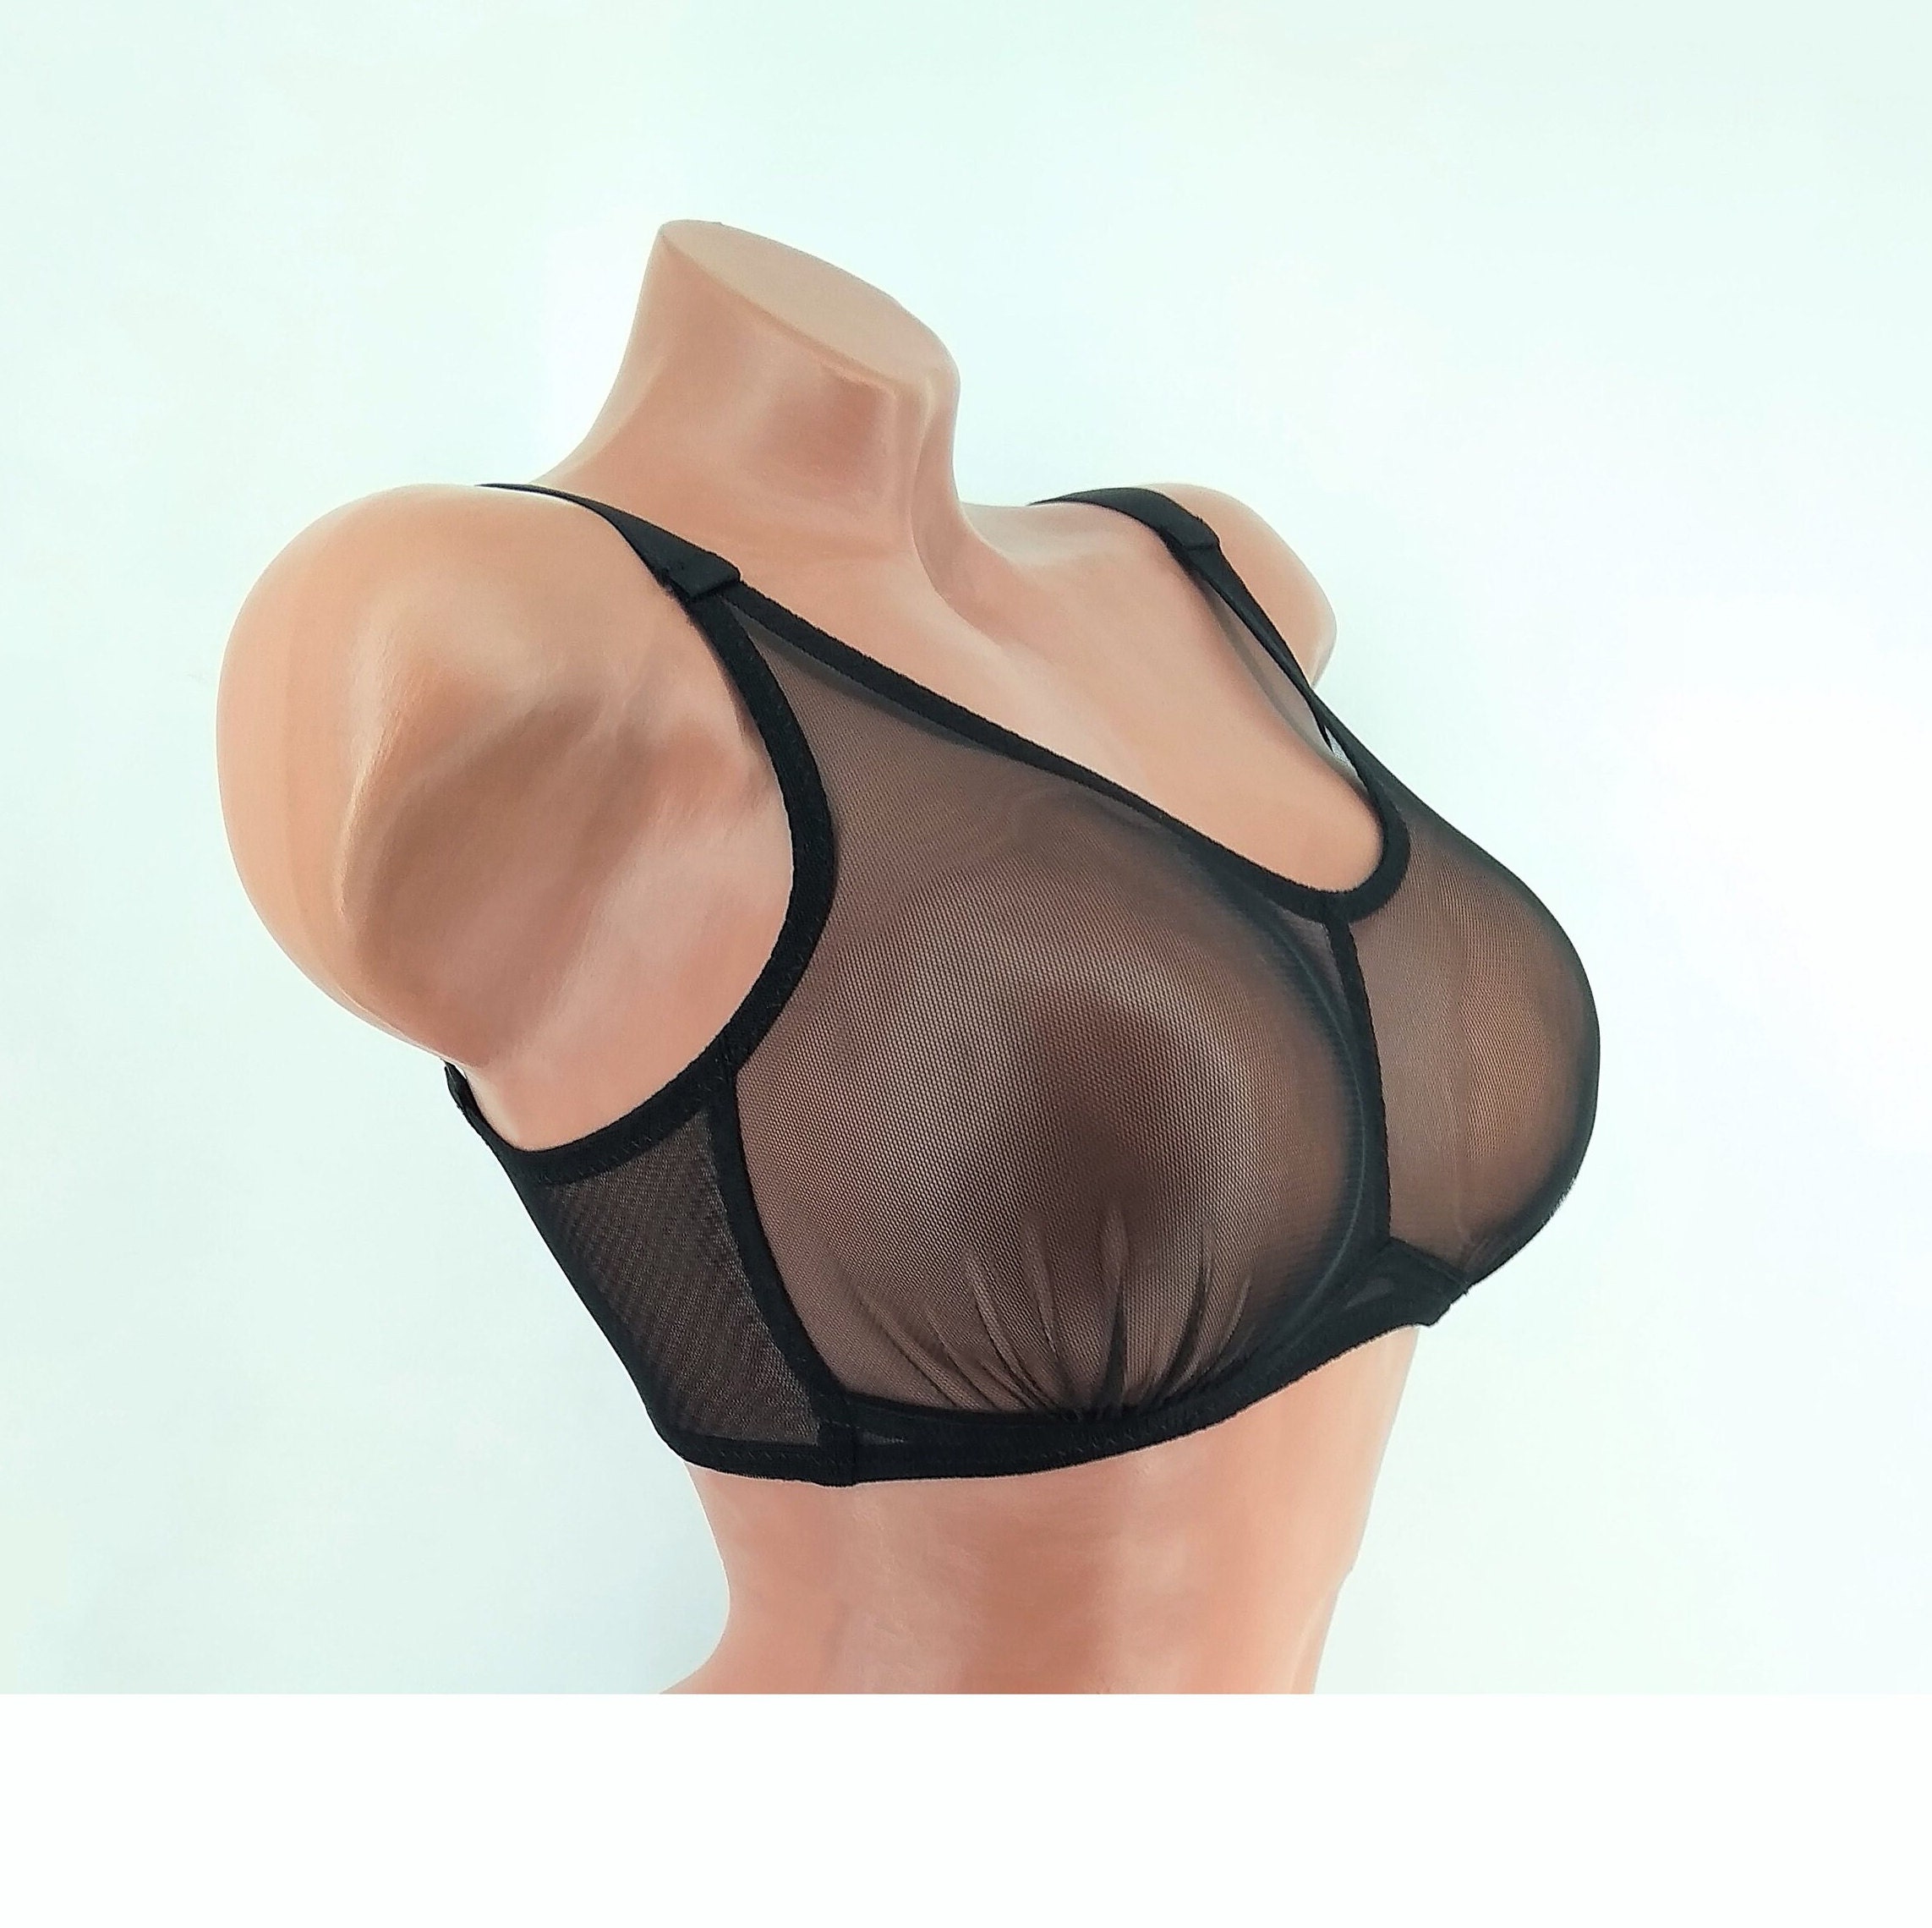 Julexy Sexy Women Underwear Plus Size Bras See Through Transparent